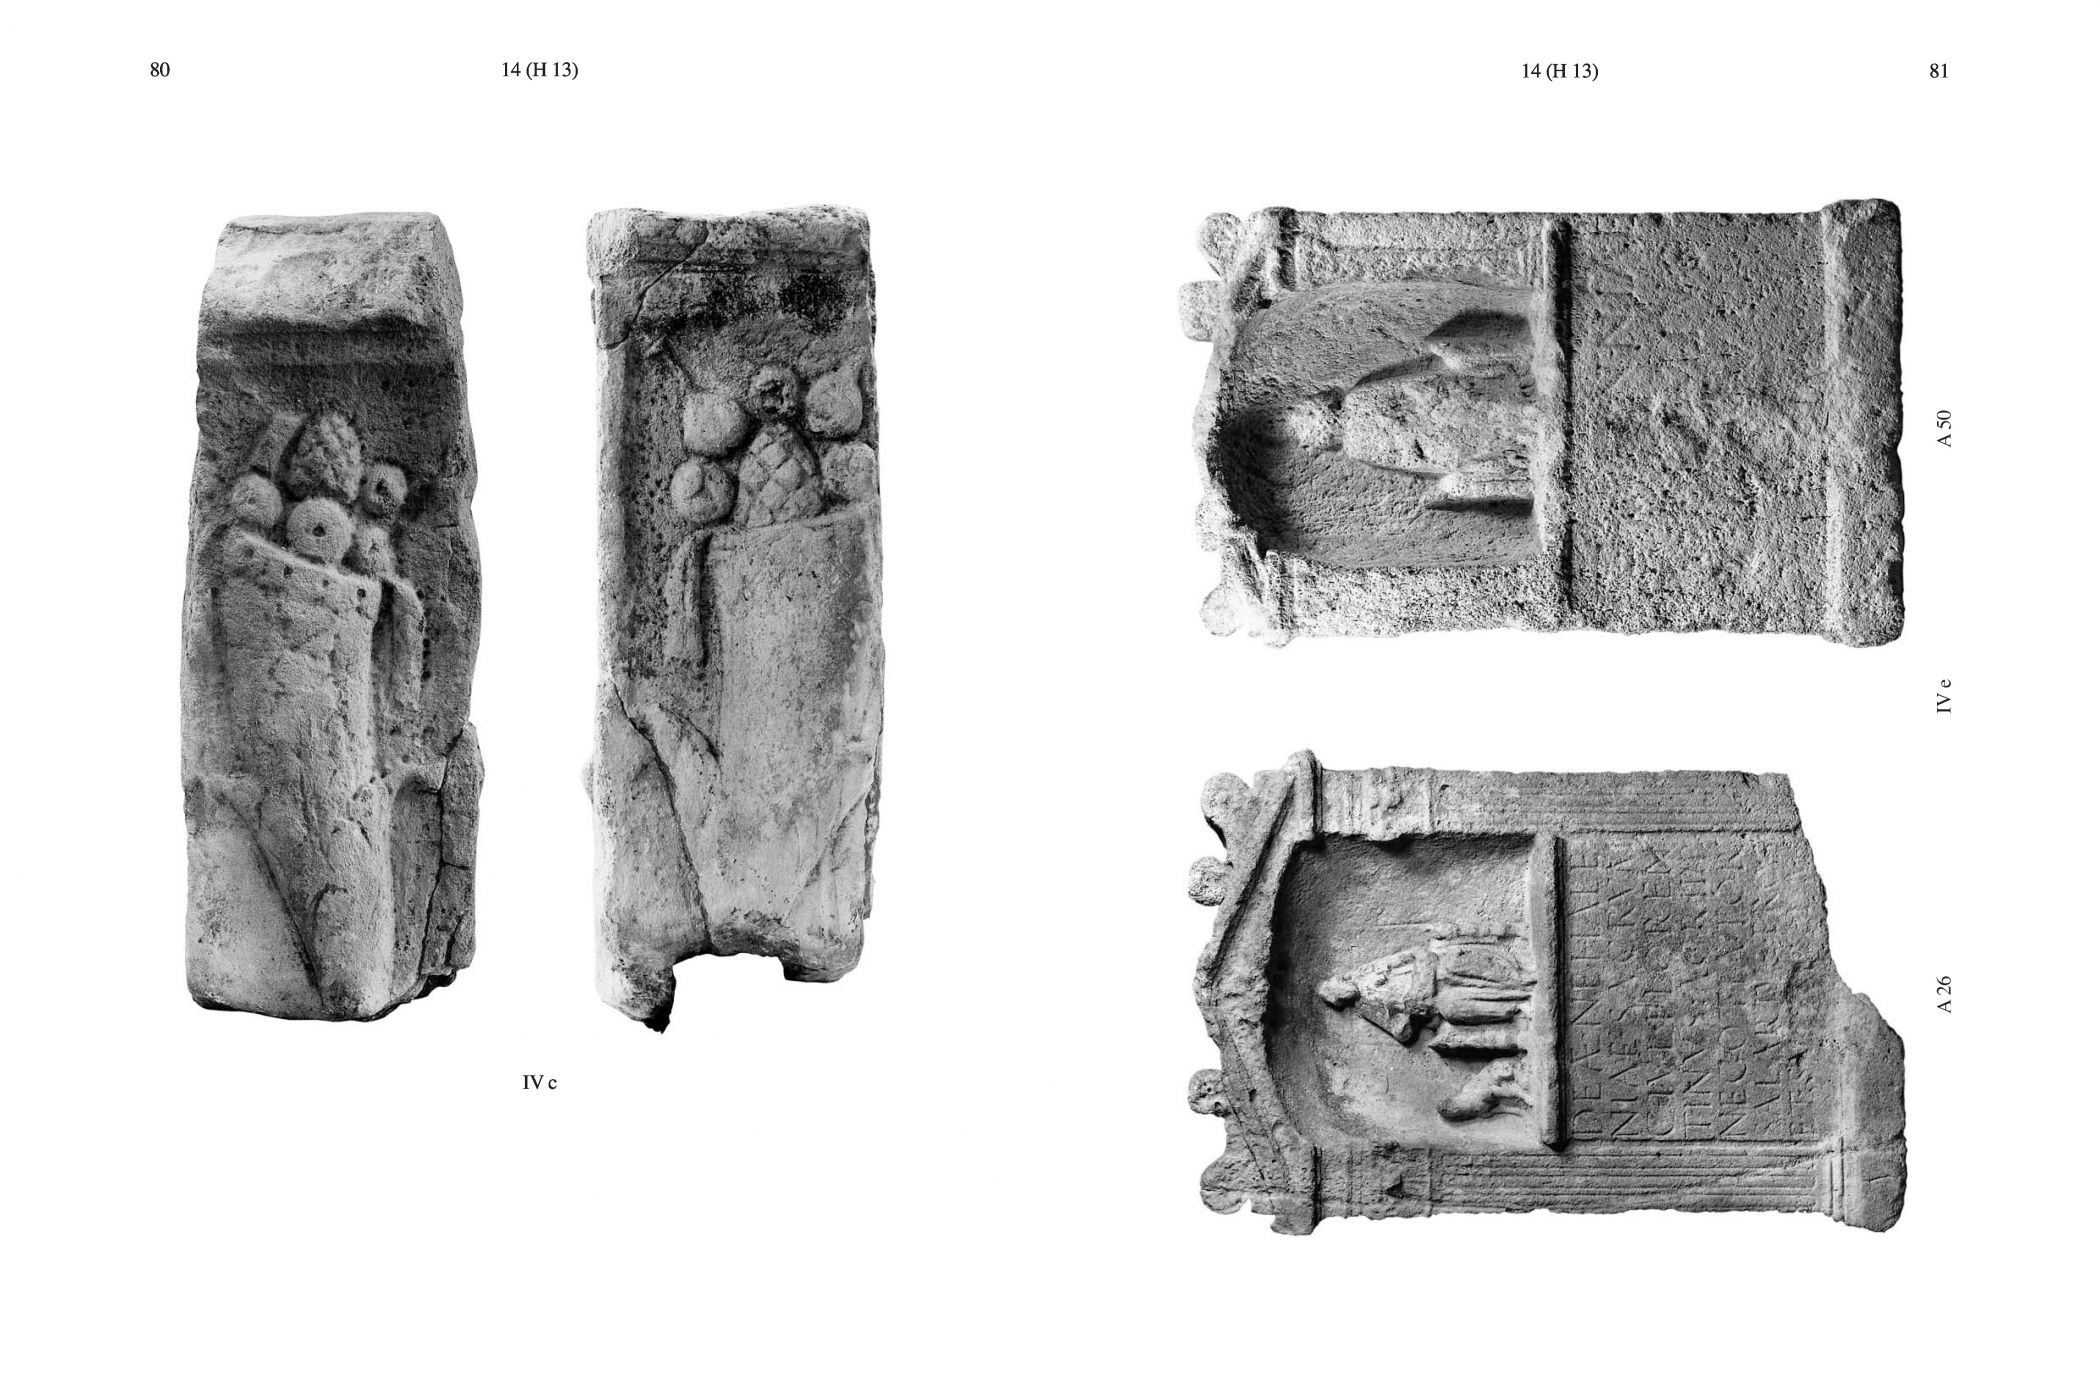 Inkijkexemplaar van het boek: <em>Nehalennia van Domburg. Geschiedenis van de stenen monumenten</em> - © Uitgeverij Matrijs